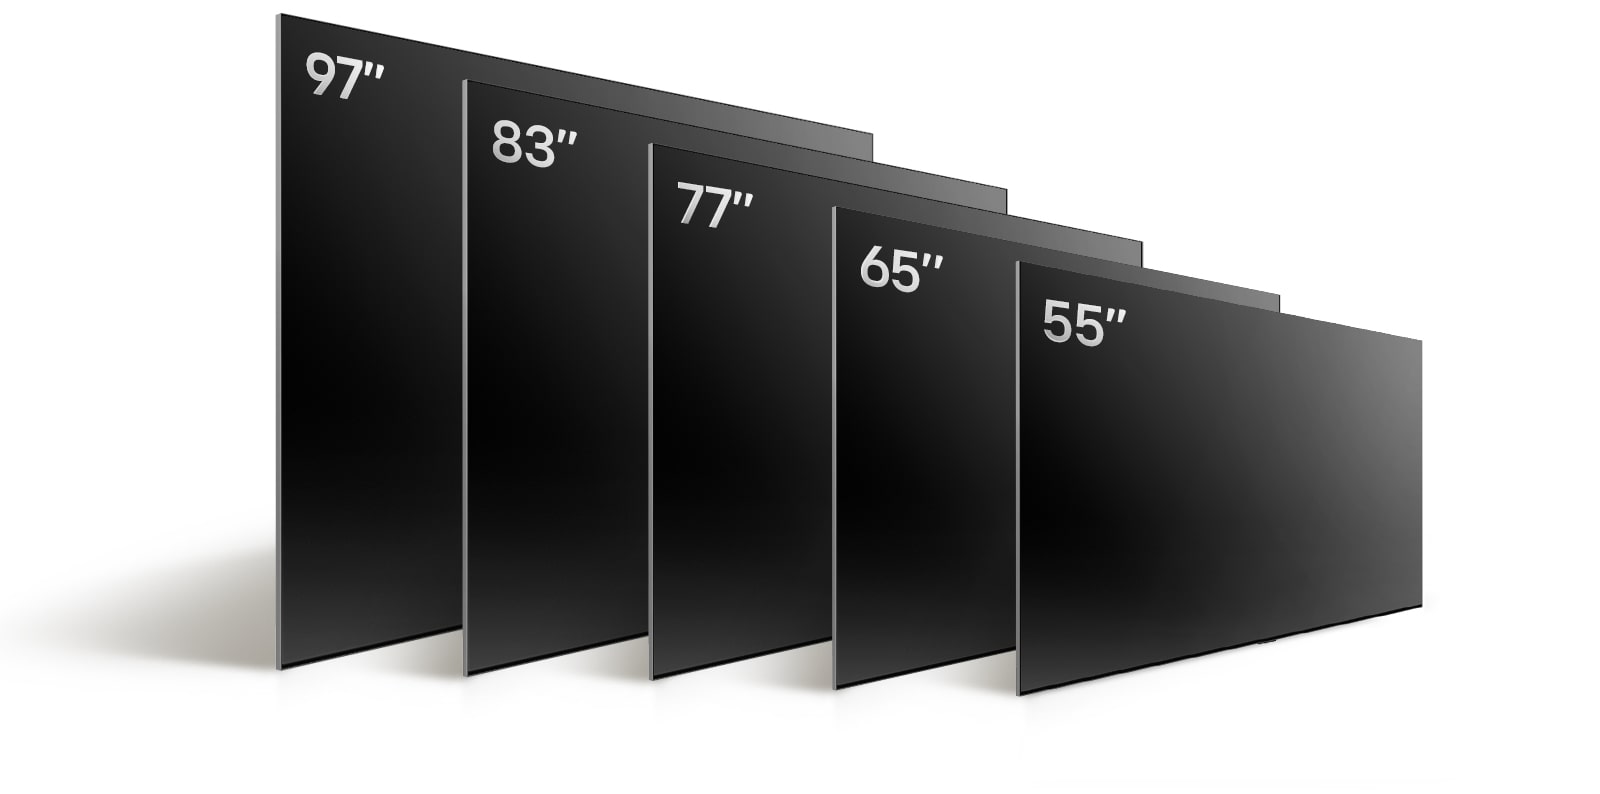 Vergleich des LG OLED evo TV G4 in verschiedenen Grössen: OLED evo G4 55 Zoll, OLED evo G4  65 Zoll, OLED evo G4 77 Zoll, OLED evo G4 83 Zoll und OLED evo G4 97 Zoll.